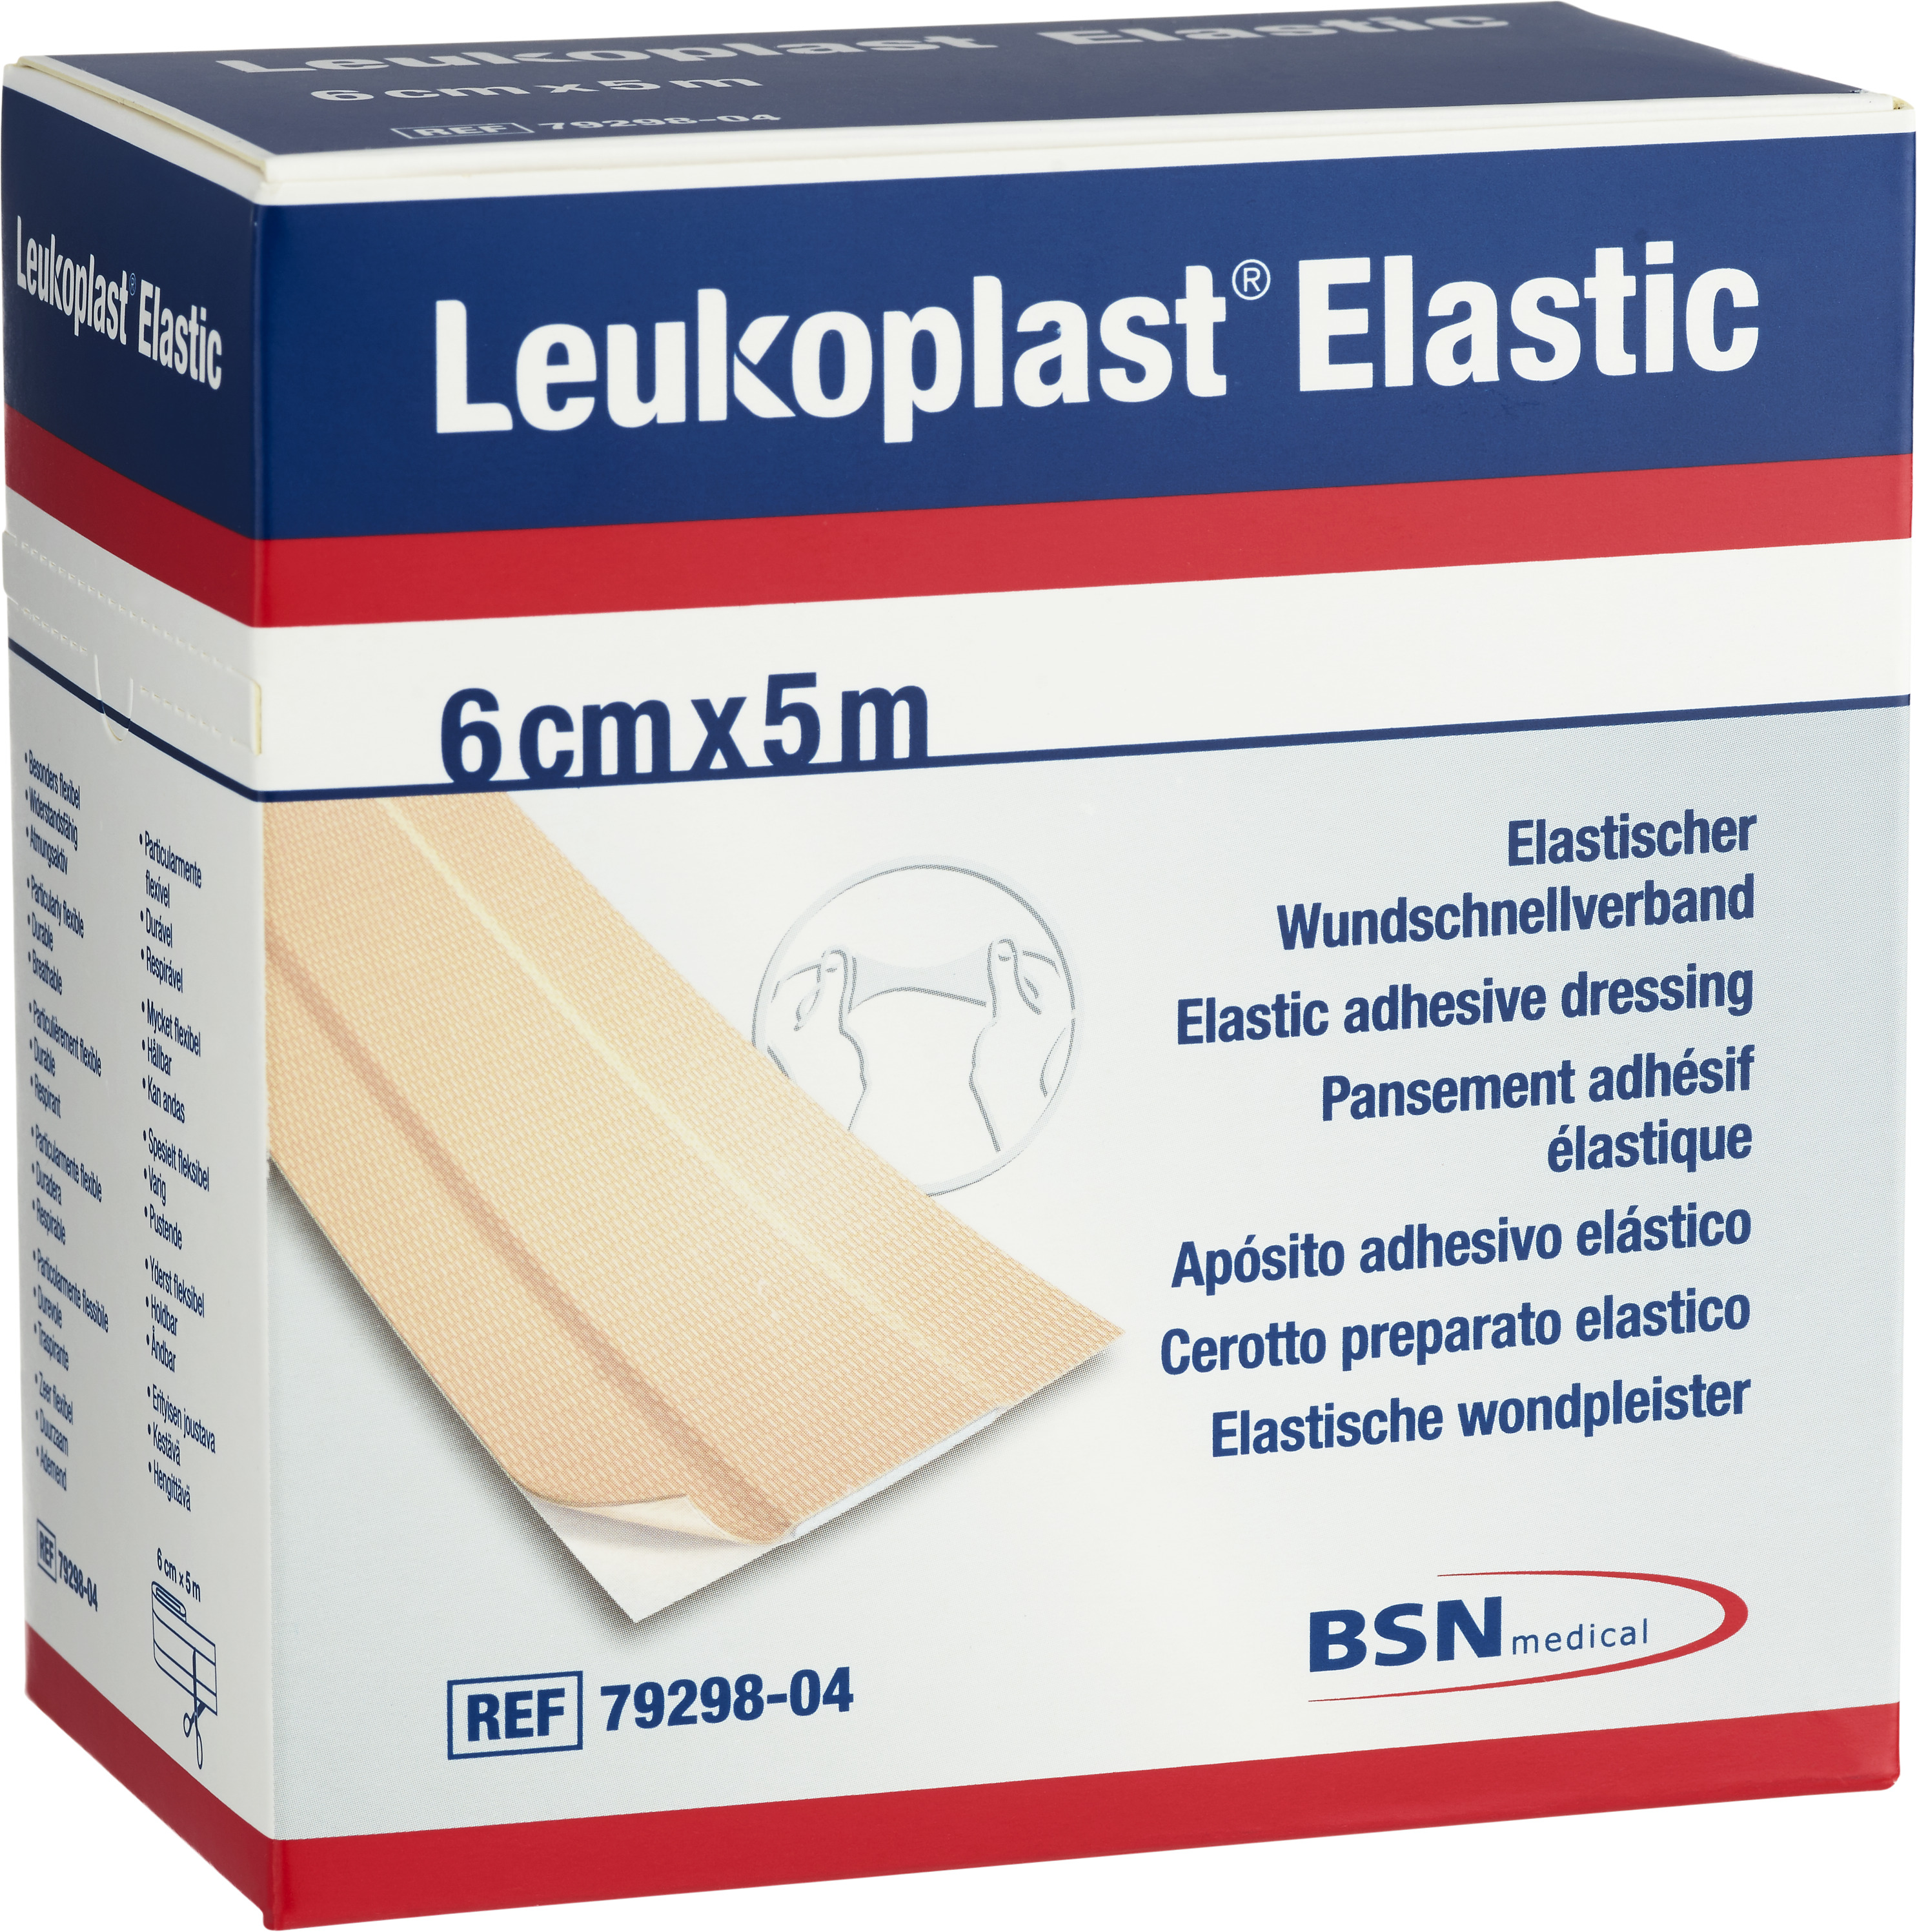 Leukoplast Elastic 6 cm x 5 m